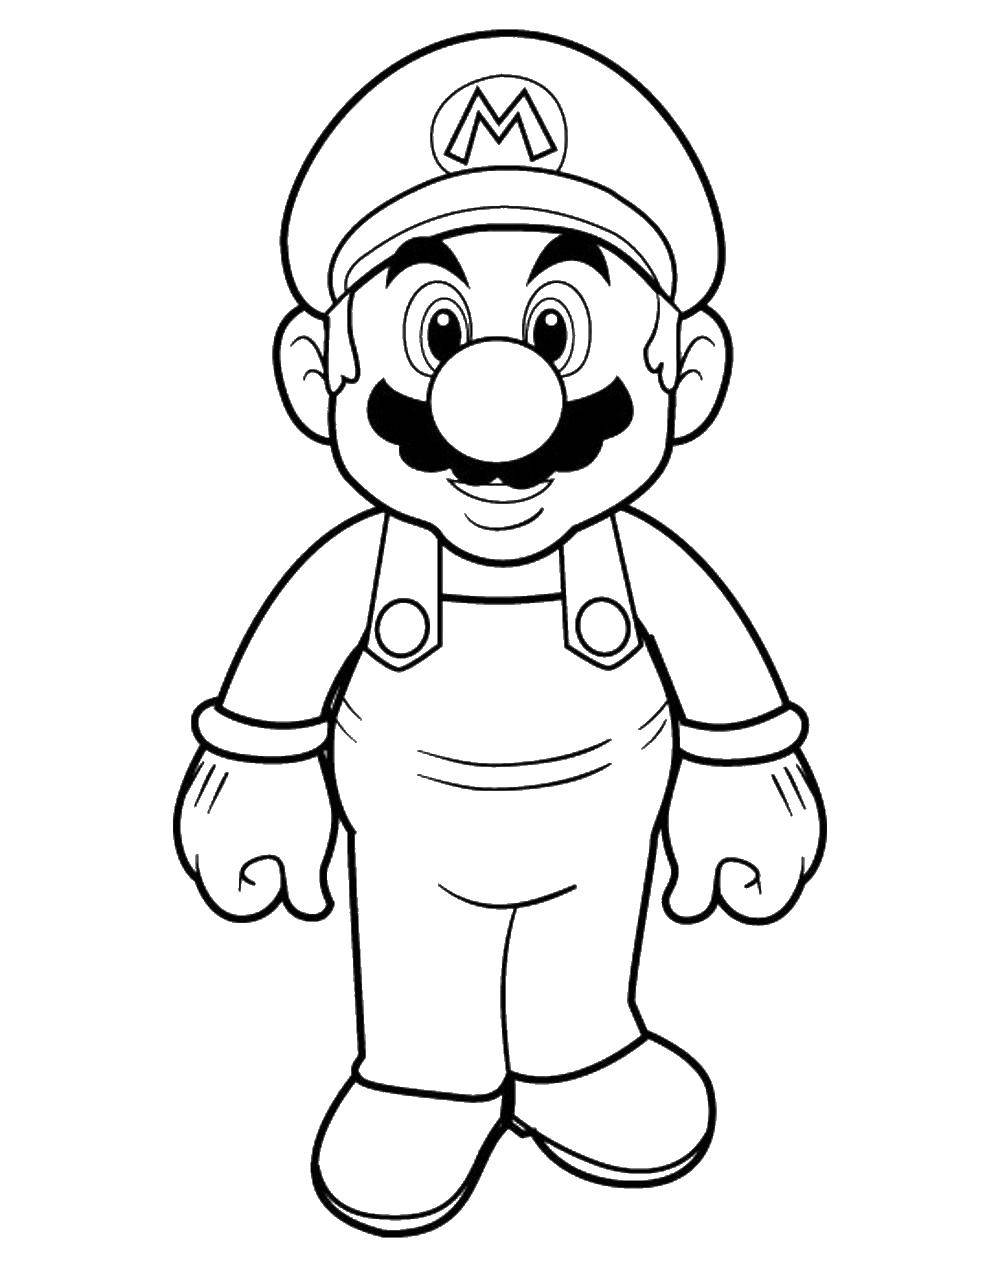 Coloring Super Mario. Category Mario. Tags:  Mario, games, Sega.